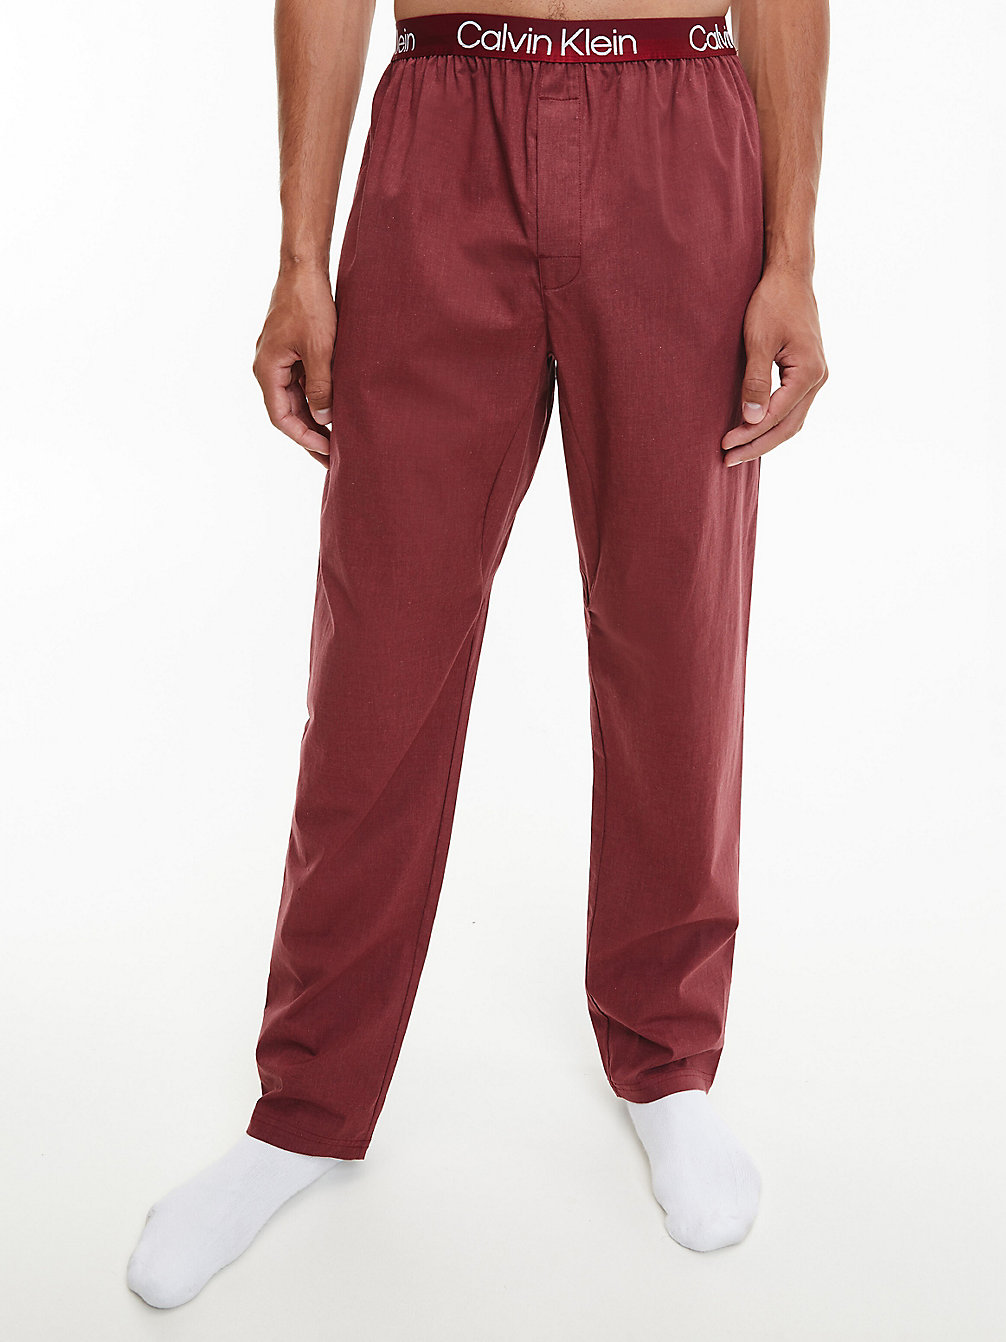 RED CARPET HEATHER Pyjamabroek - Modern Structure undefined heren Calvin Klein